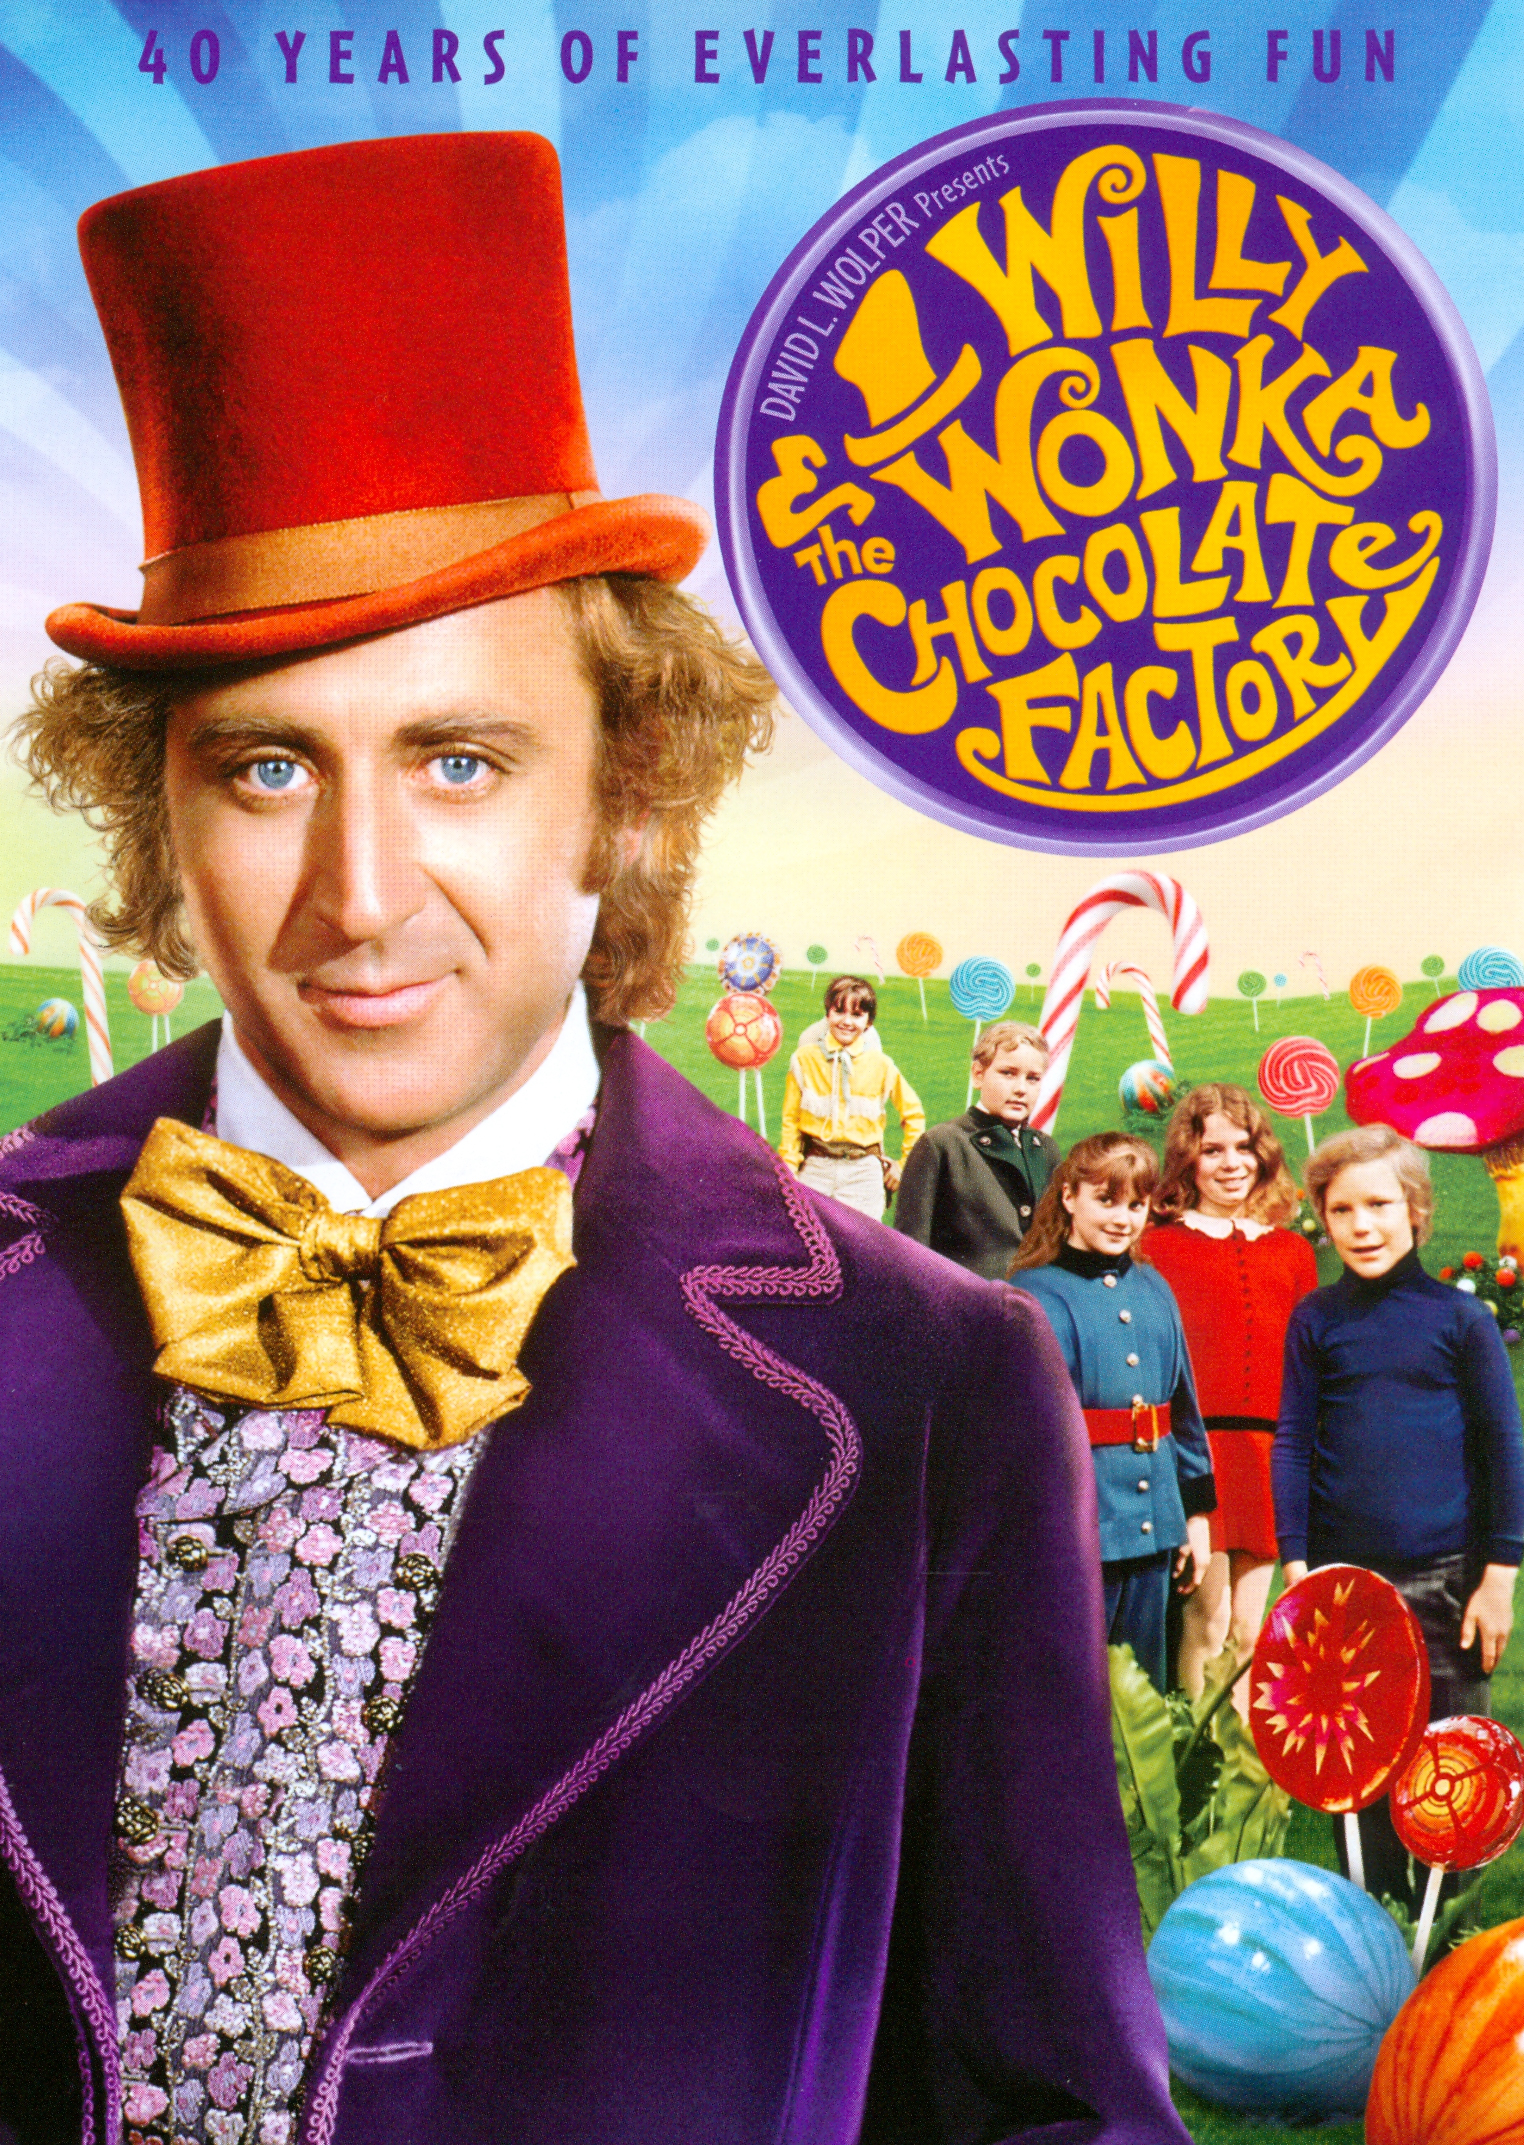 Willy Wonka & the Chocolate Factory (1971) วิลลี่ วองก้ากับโรงงานช็อกโกแล็ต